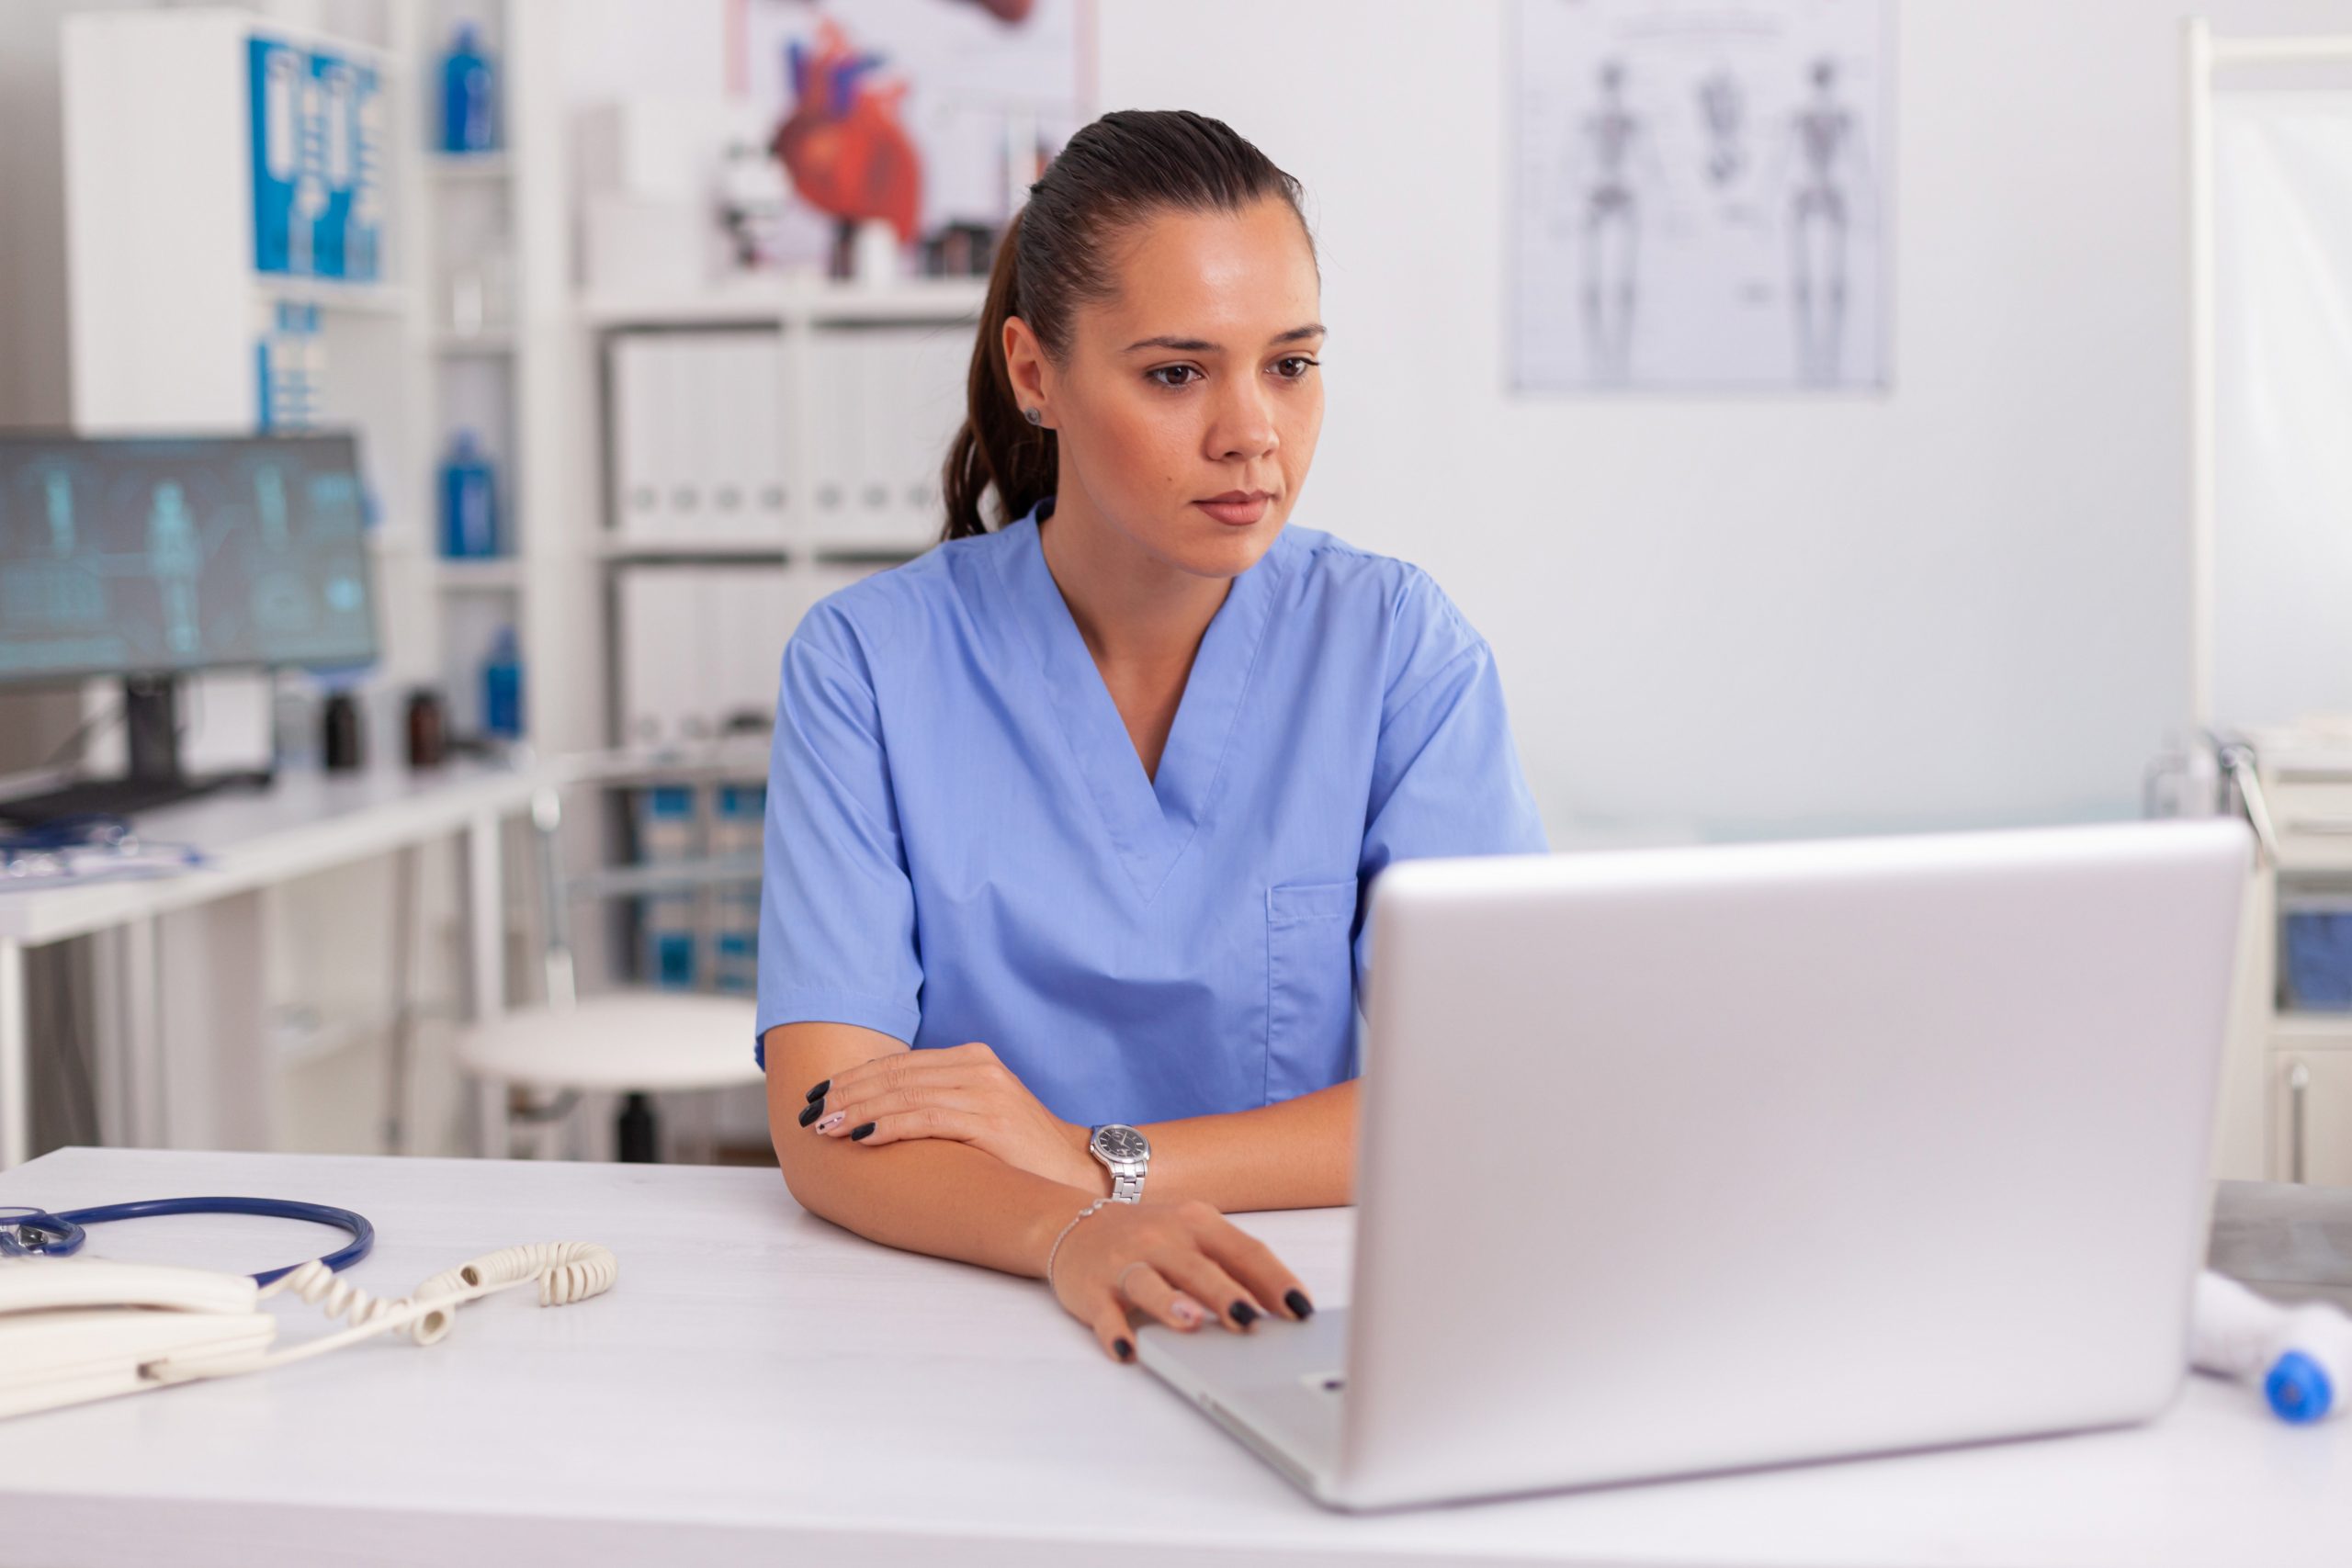 Enfermeira médica trabalhando no laptop no escritório do hospital, vestindo uniforme azul. Profissional de saúde sentado na mesa usando o computador na clínica moderna, olhando para o monitor, medicina.